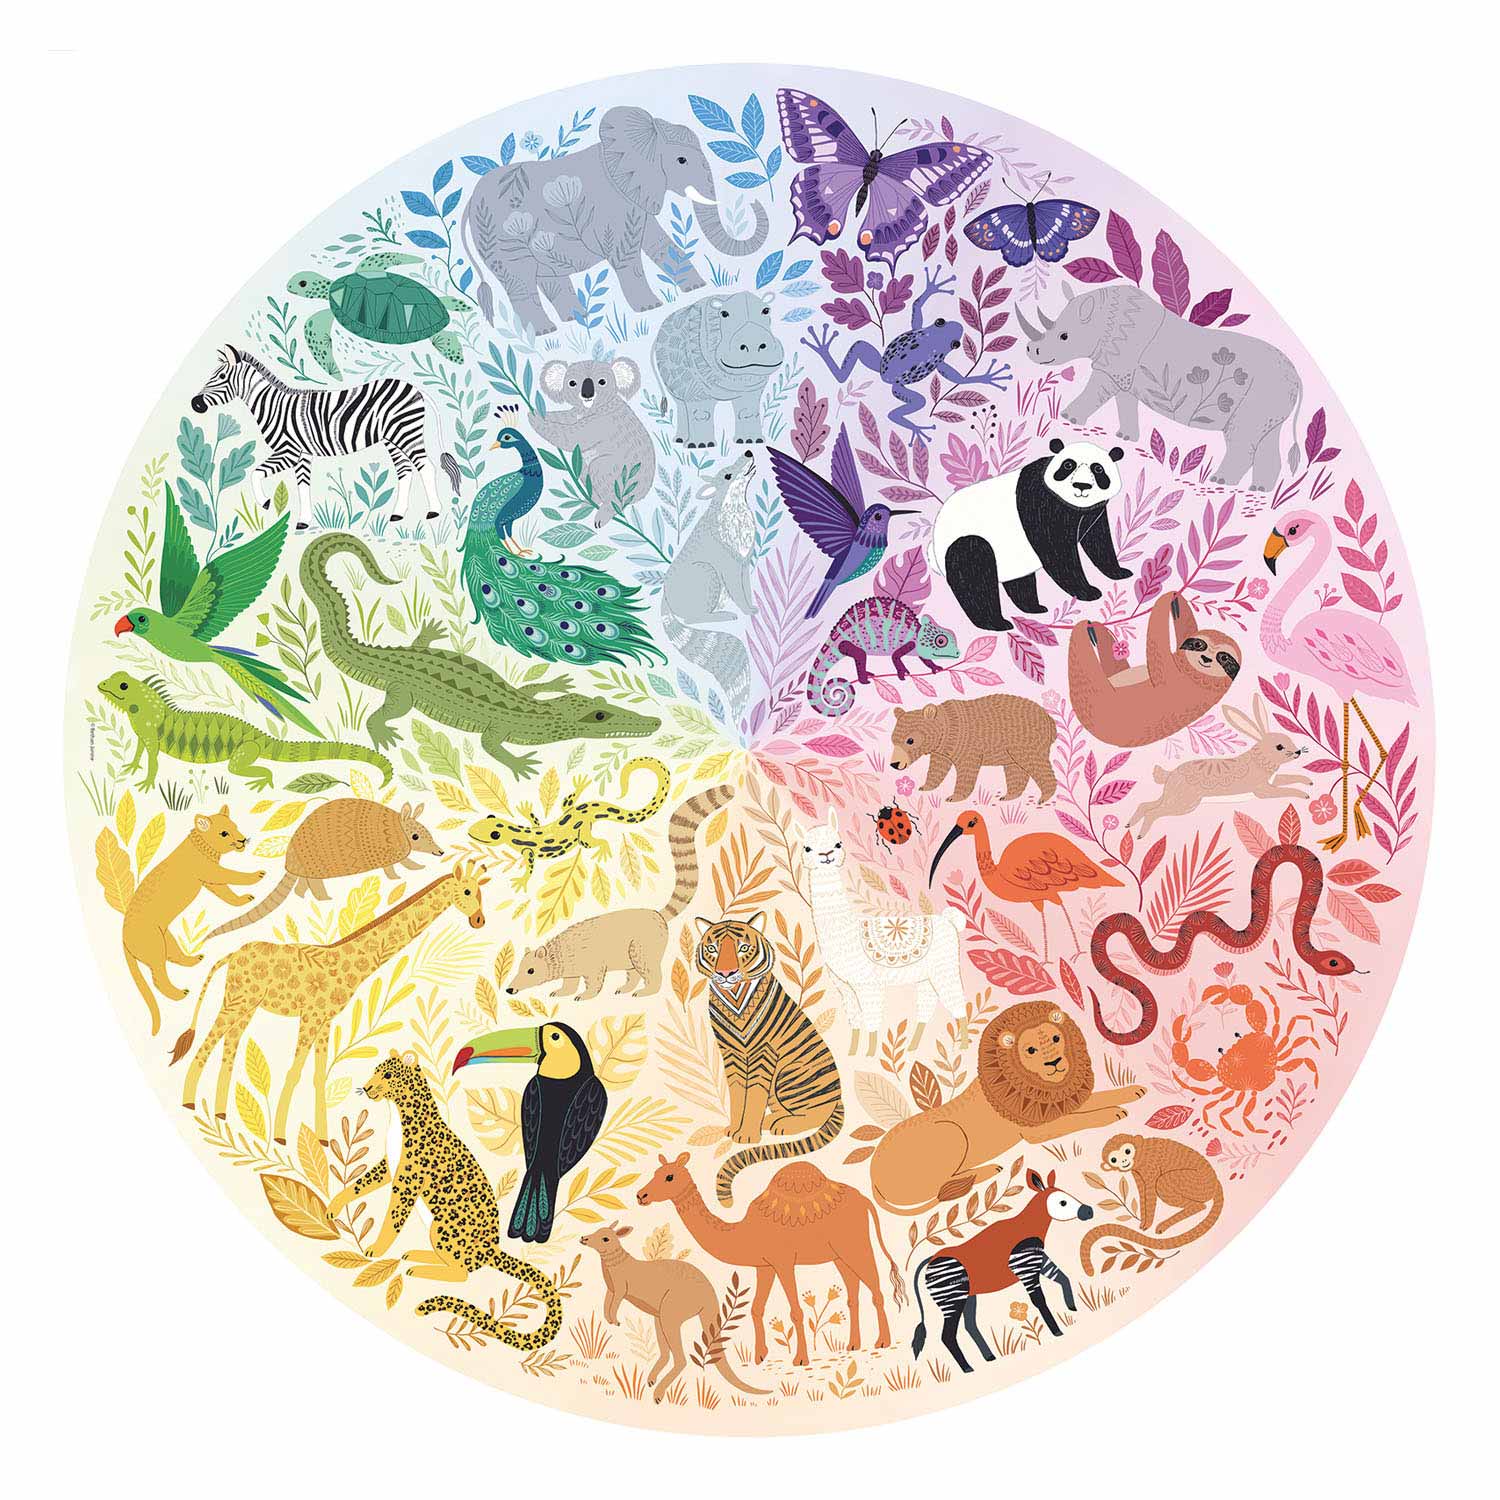 Kreis-der-Farben-Puzzles - Tiere, 500 Teile.